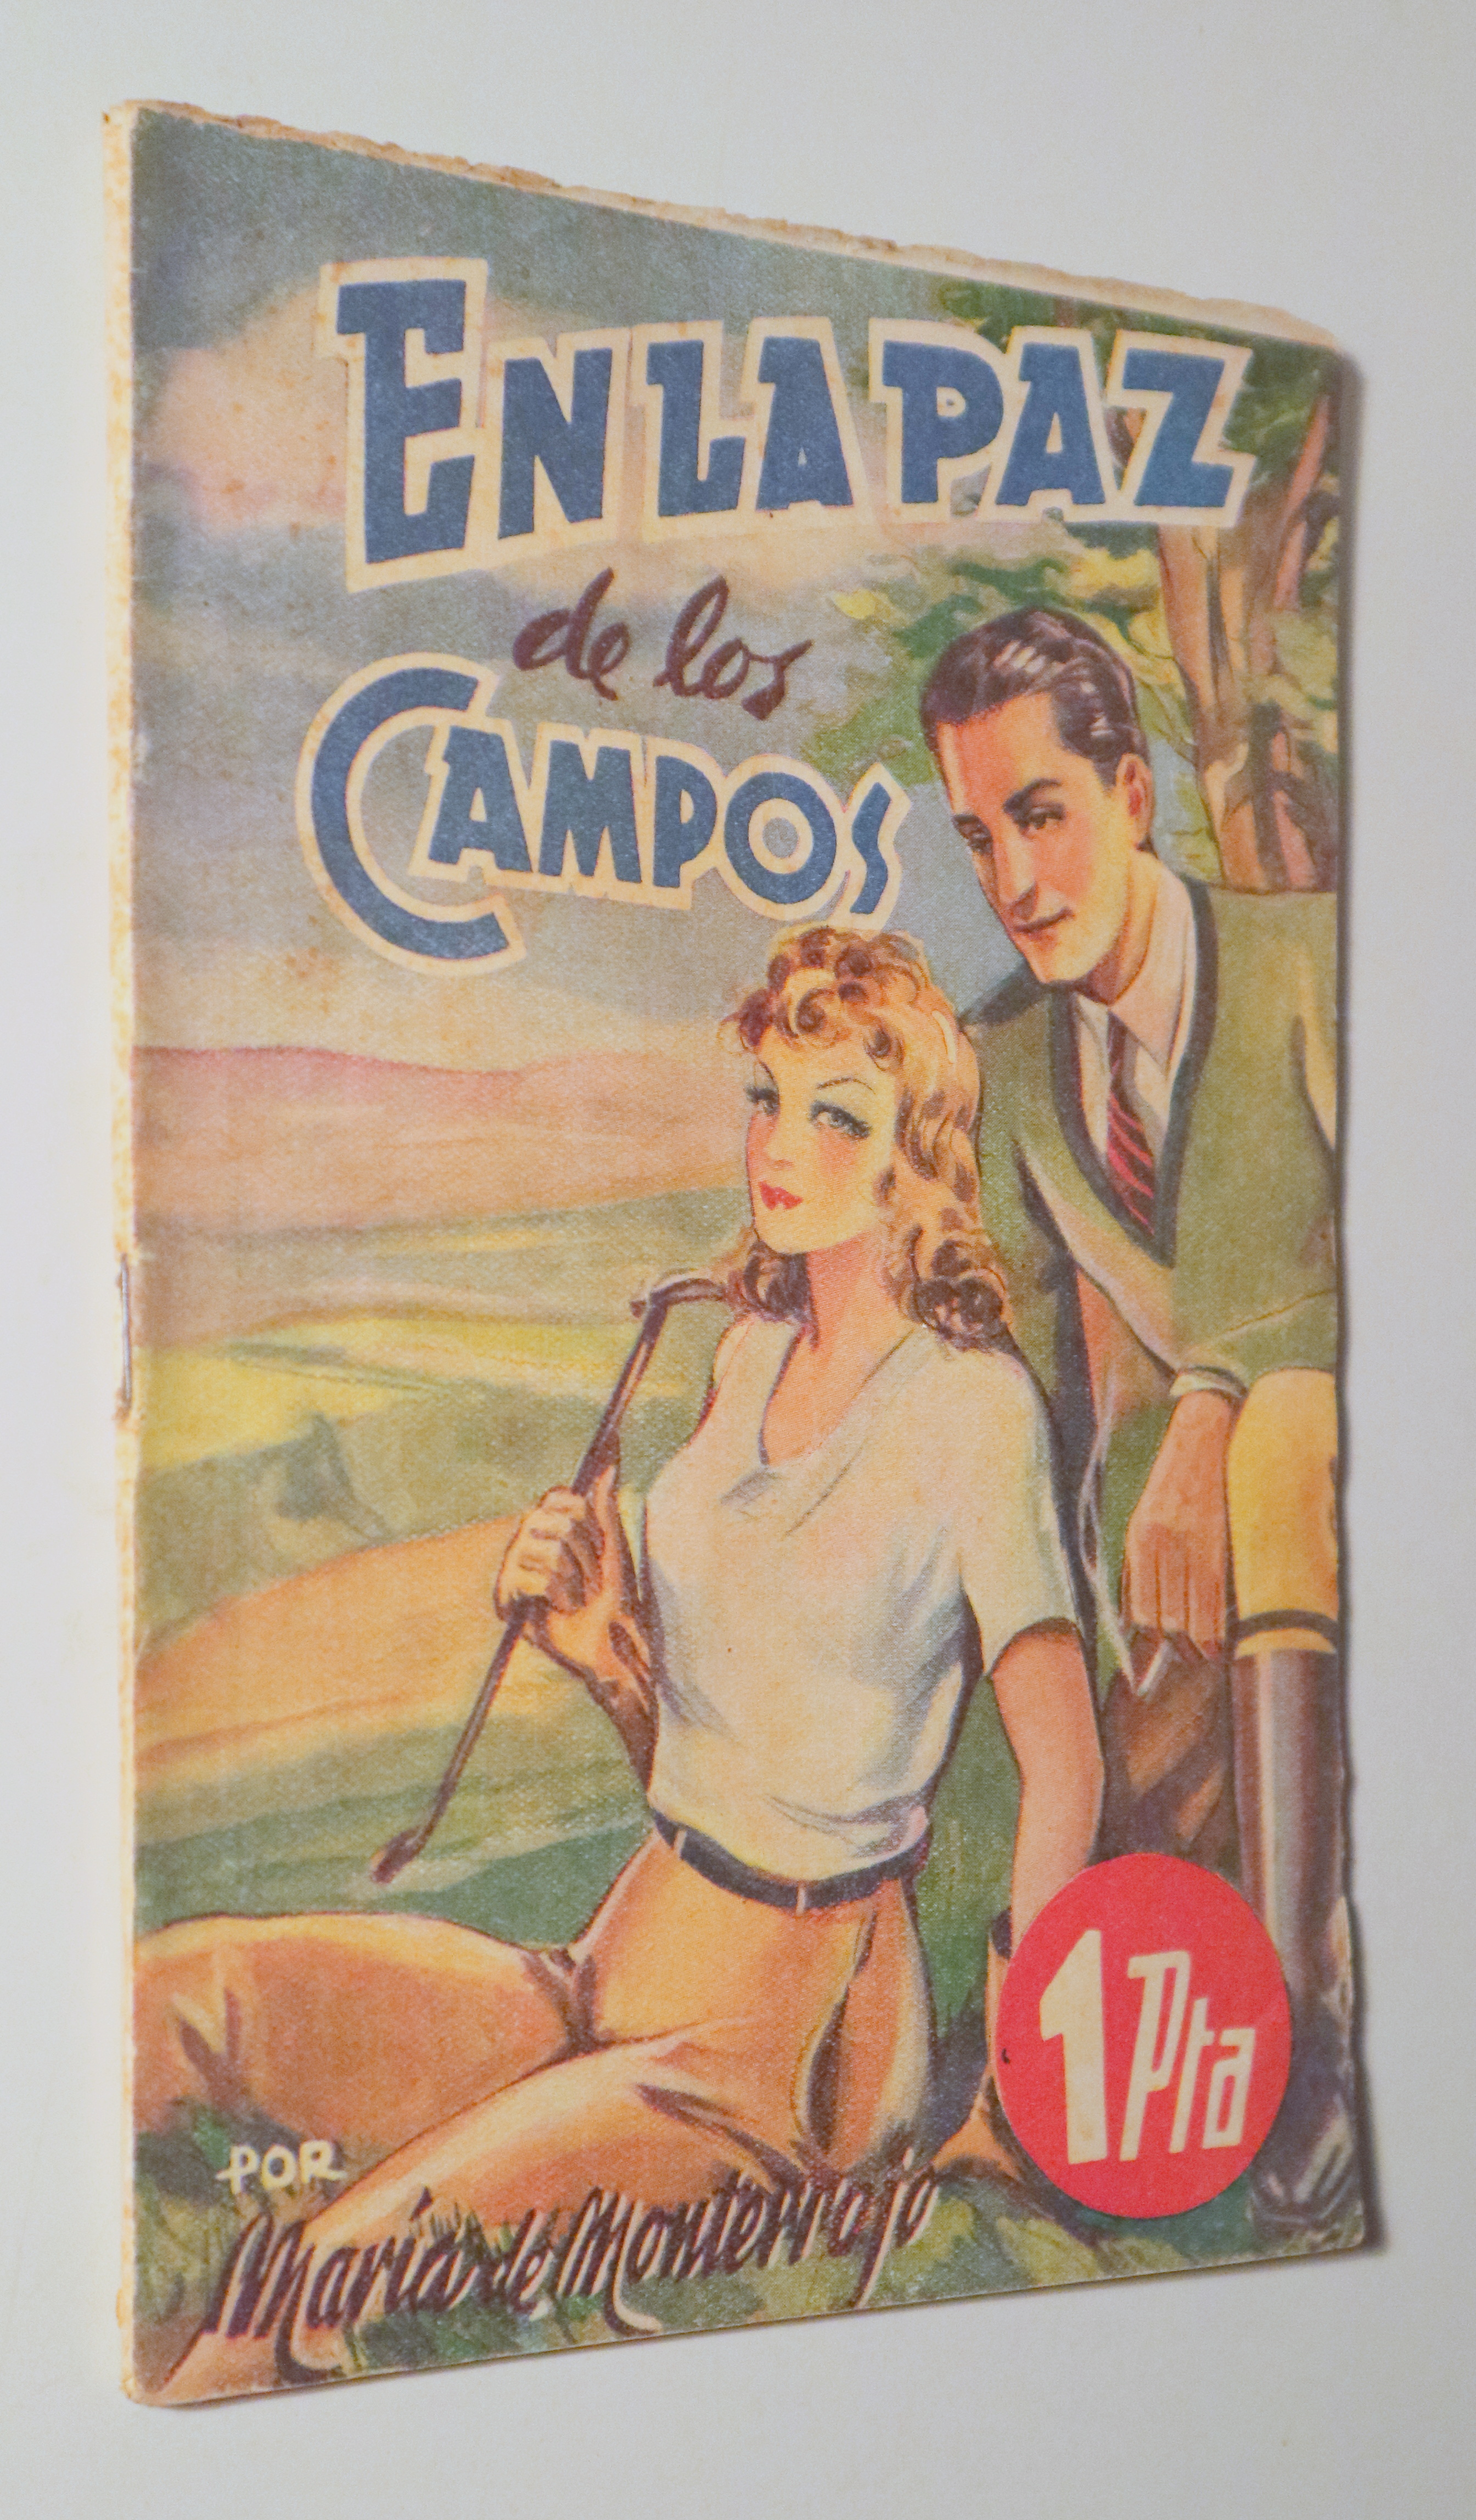 EN LA PAZ DE LOS CAMPOS - Barcelona c. 1940